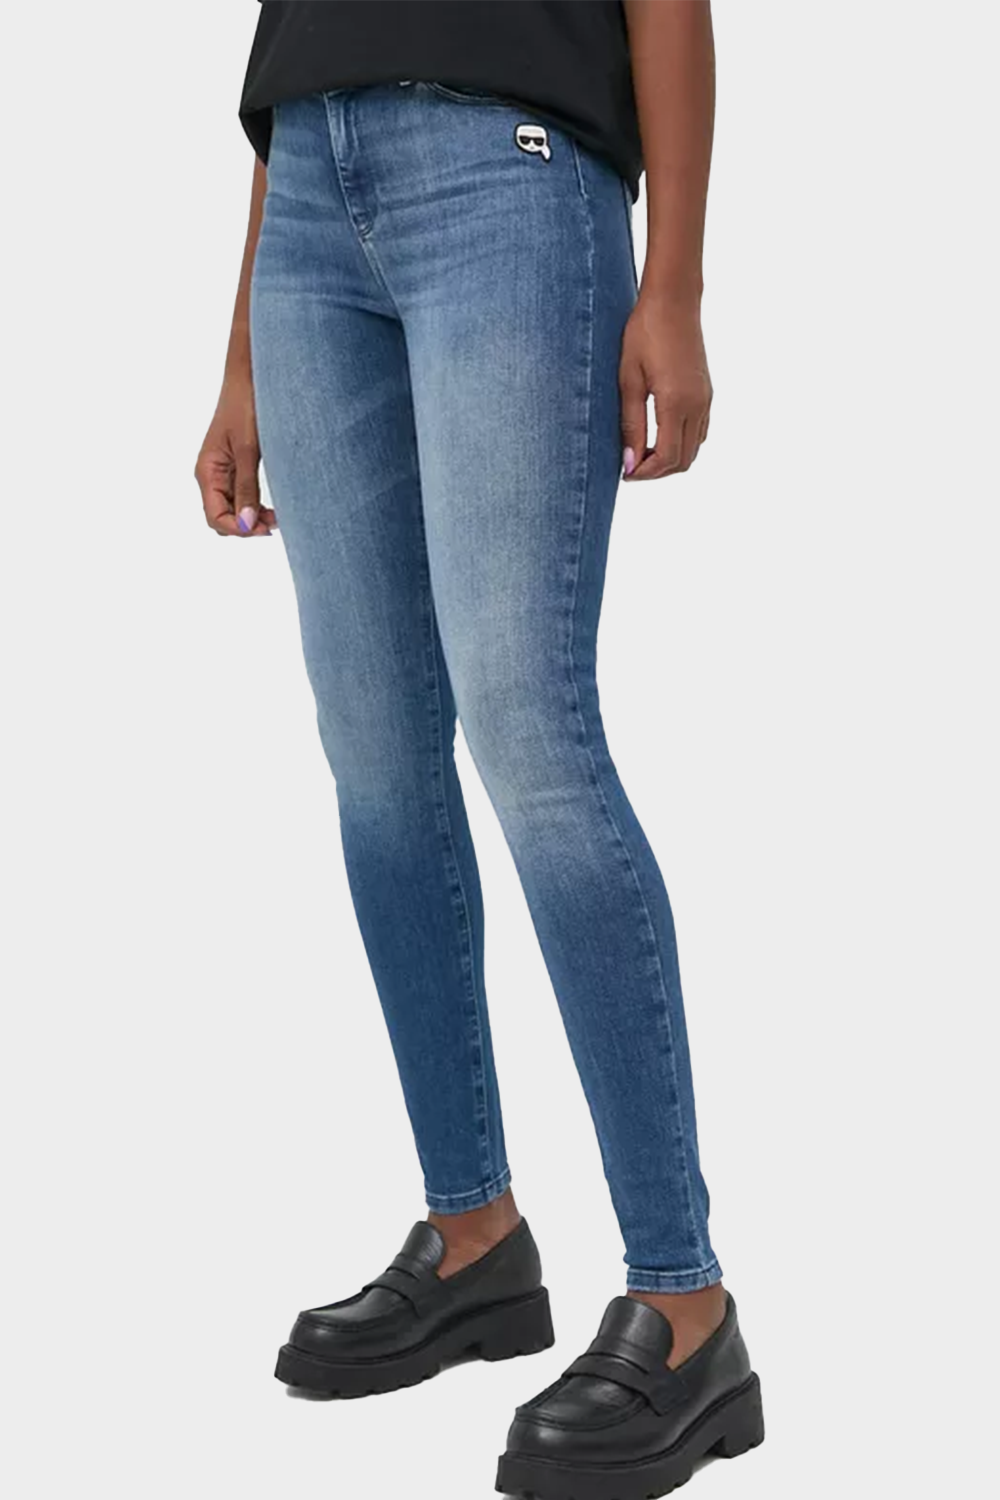 מכנסי גינס לנשים בצבע כחול KARL LAGERFELD Vendome online | ונדום .